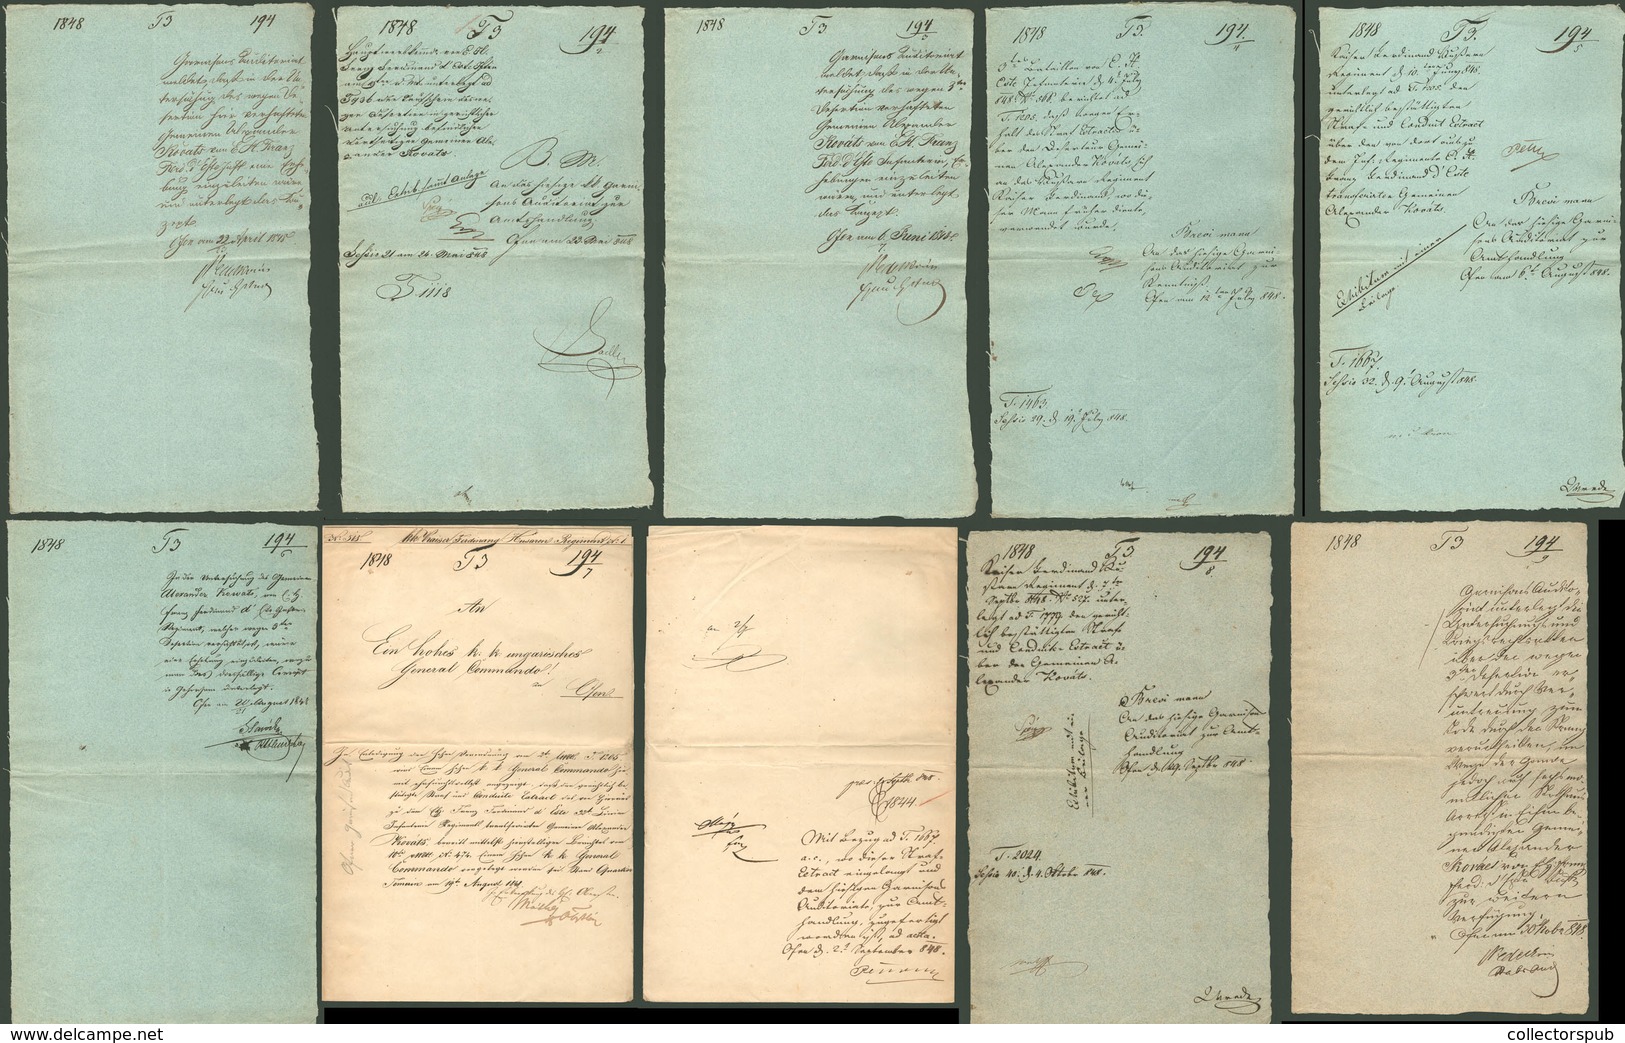 1848. SZABADSÁGHARC Érdekes iratgyűjtemény!  lásd részletes leírás  /  1848 REVOLUTION interesting document collection